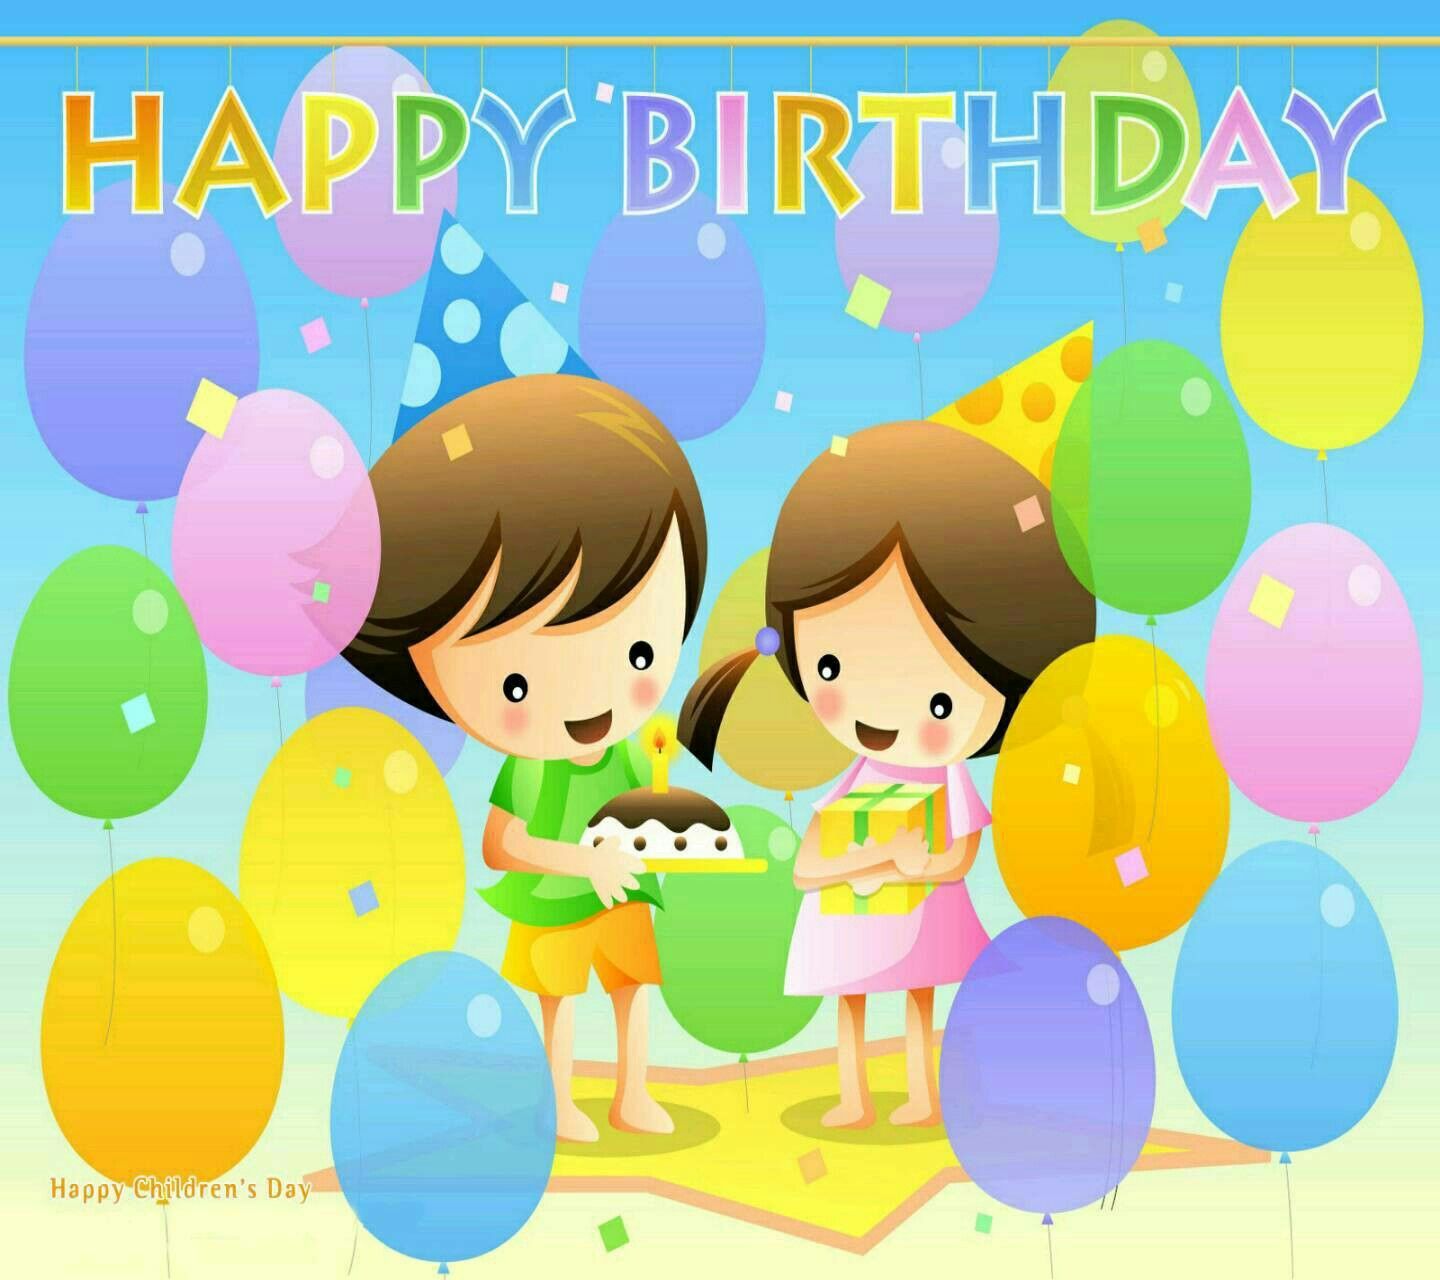 Happy birthday. Happy birthday wallpaper, Birthday wishes for kids, Cute happy birthday